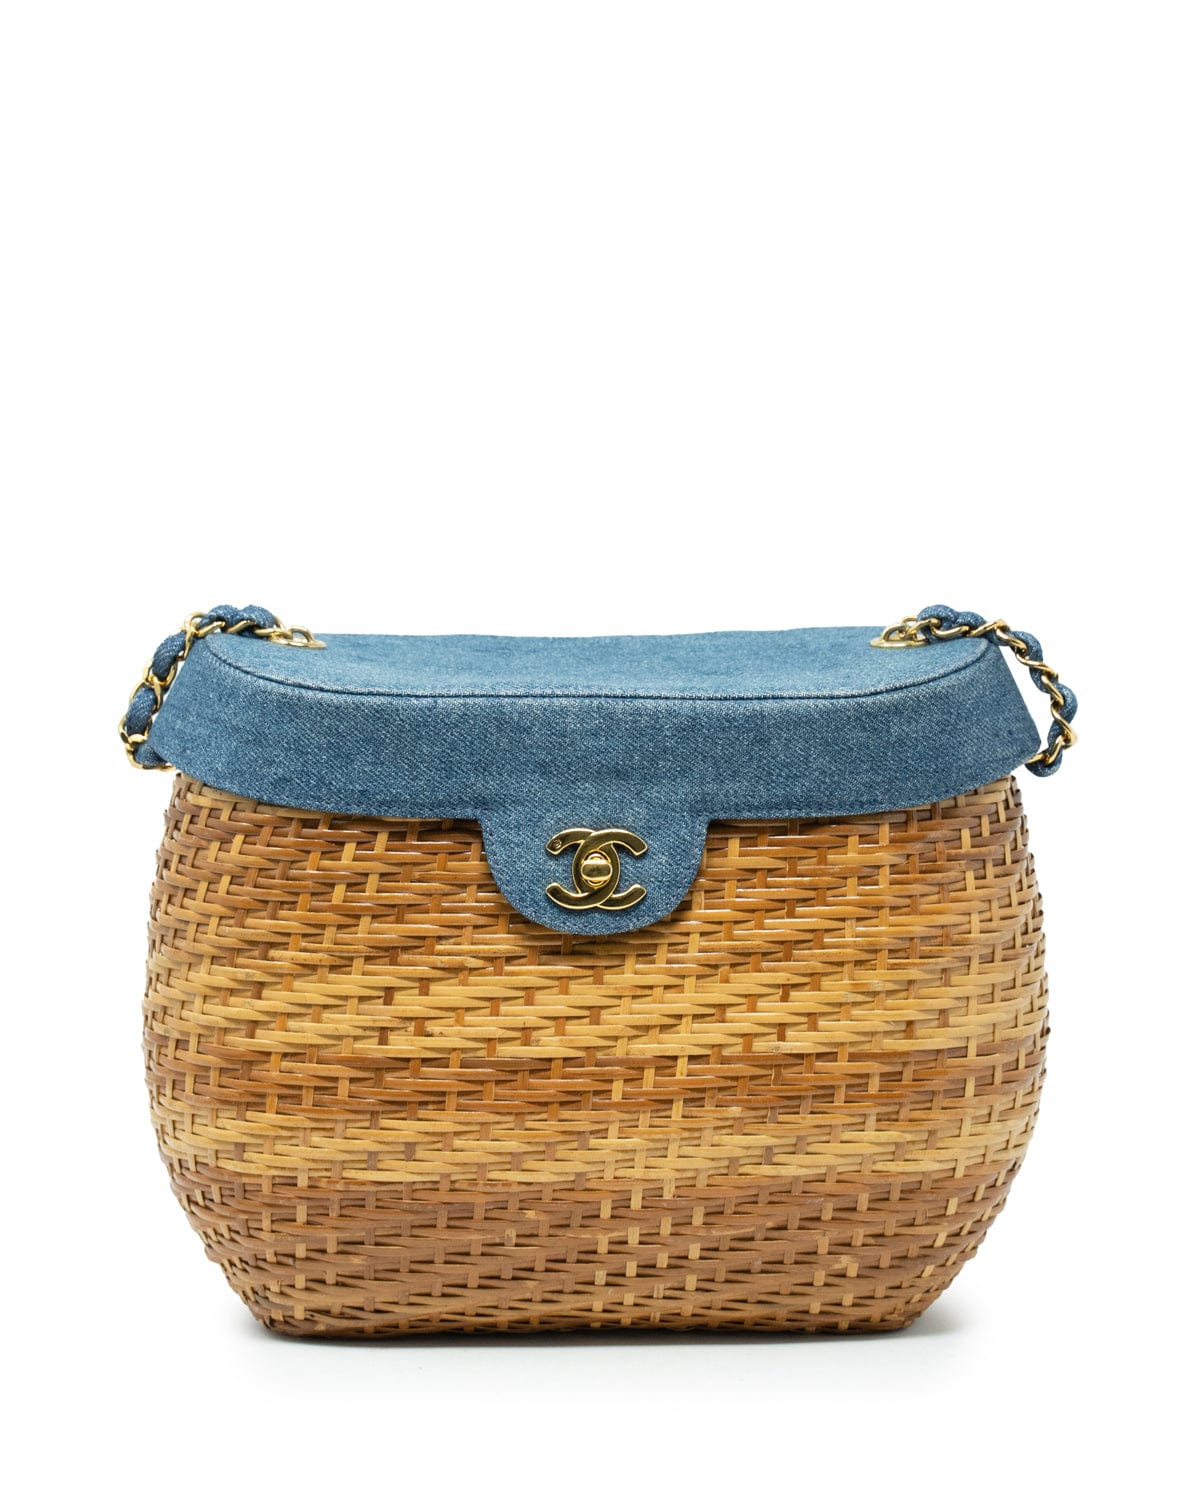 Chanel Chanel Vintage Denim Basket Bag AJL0007